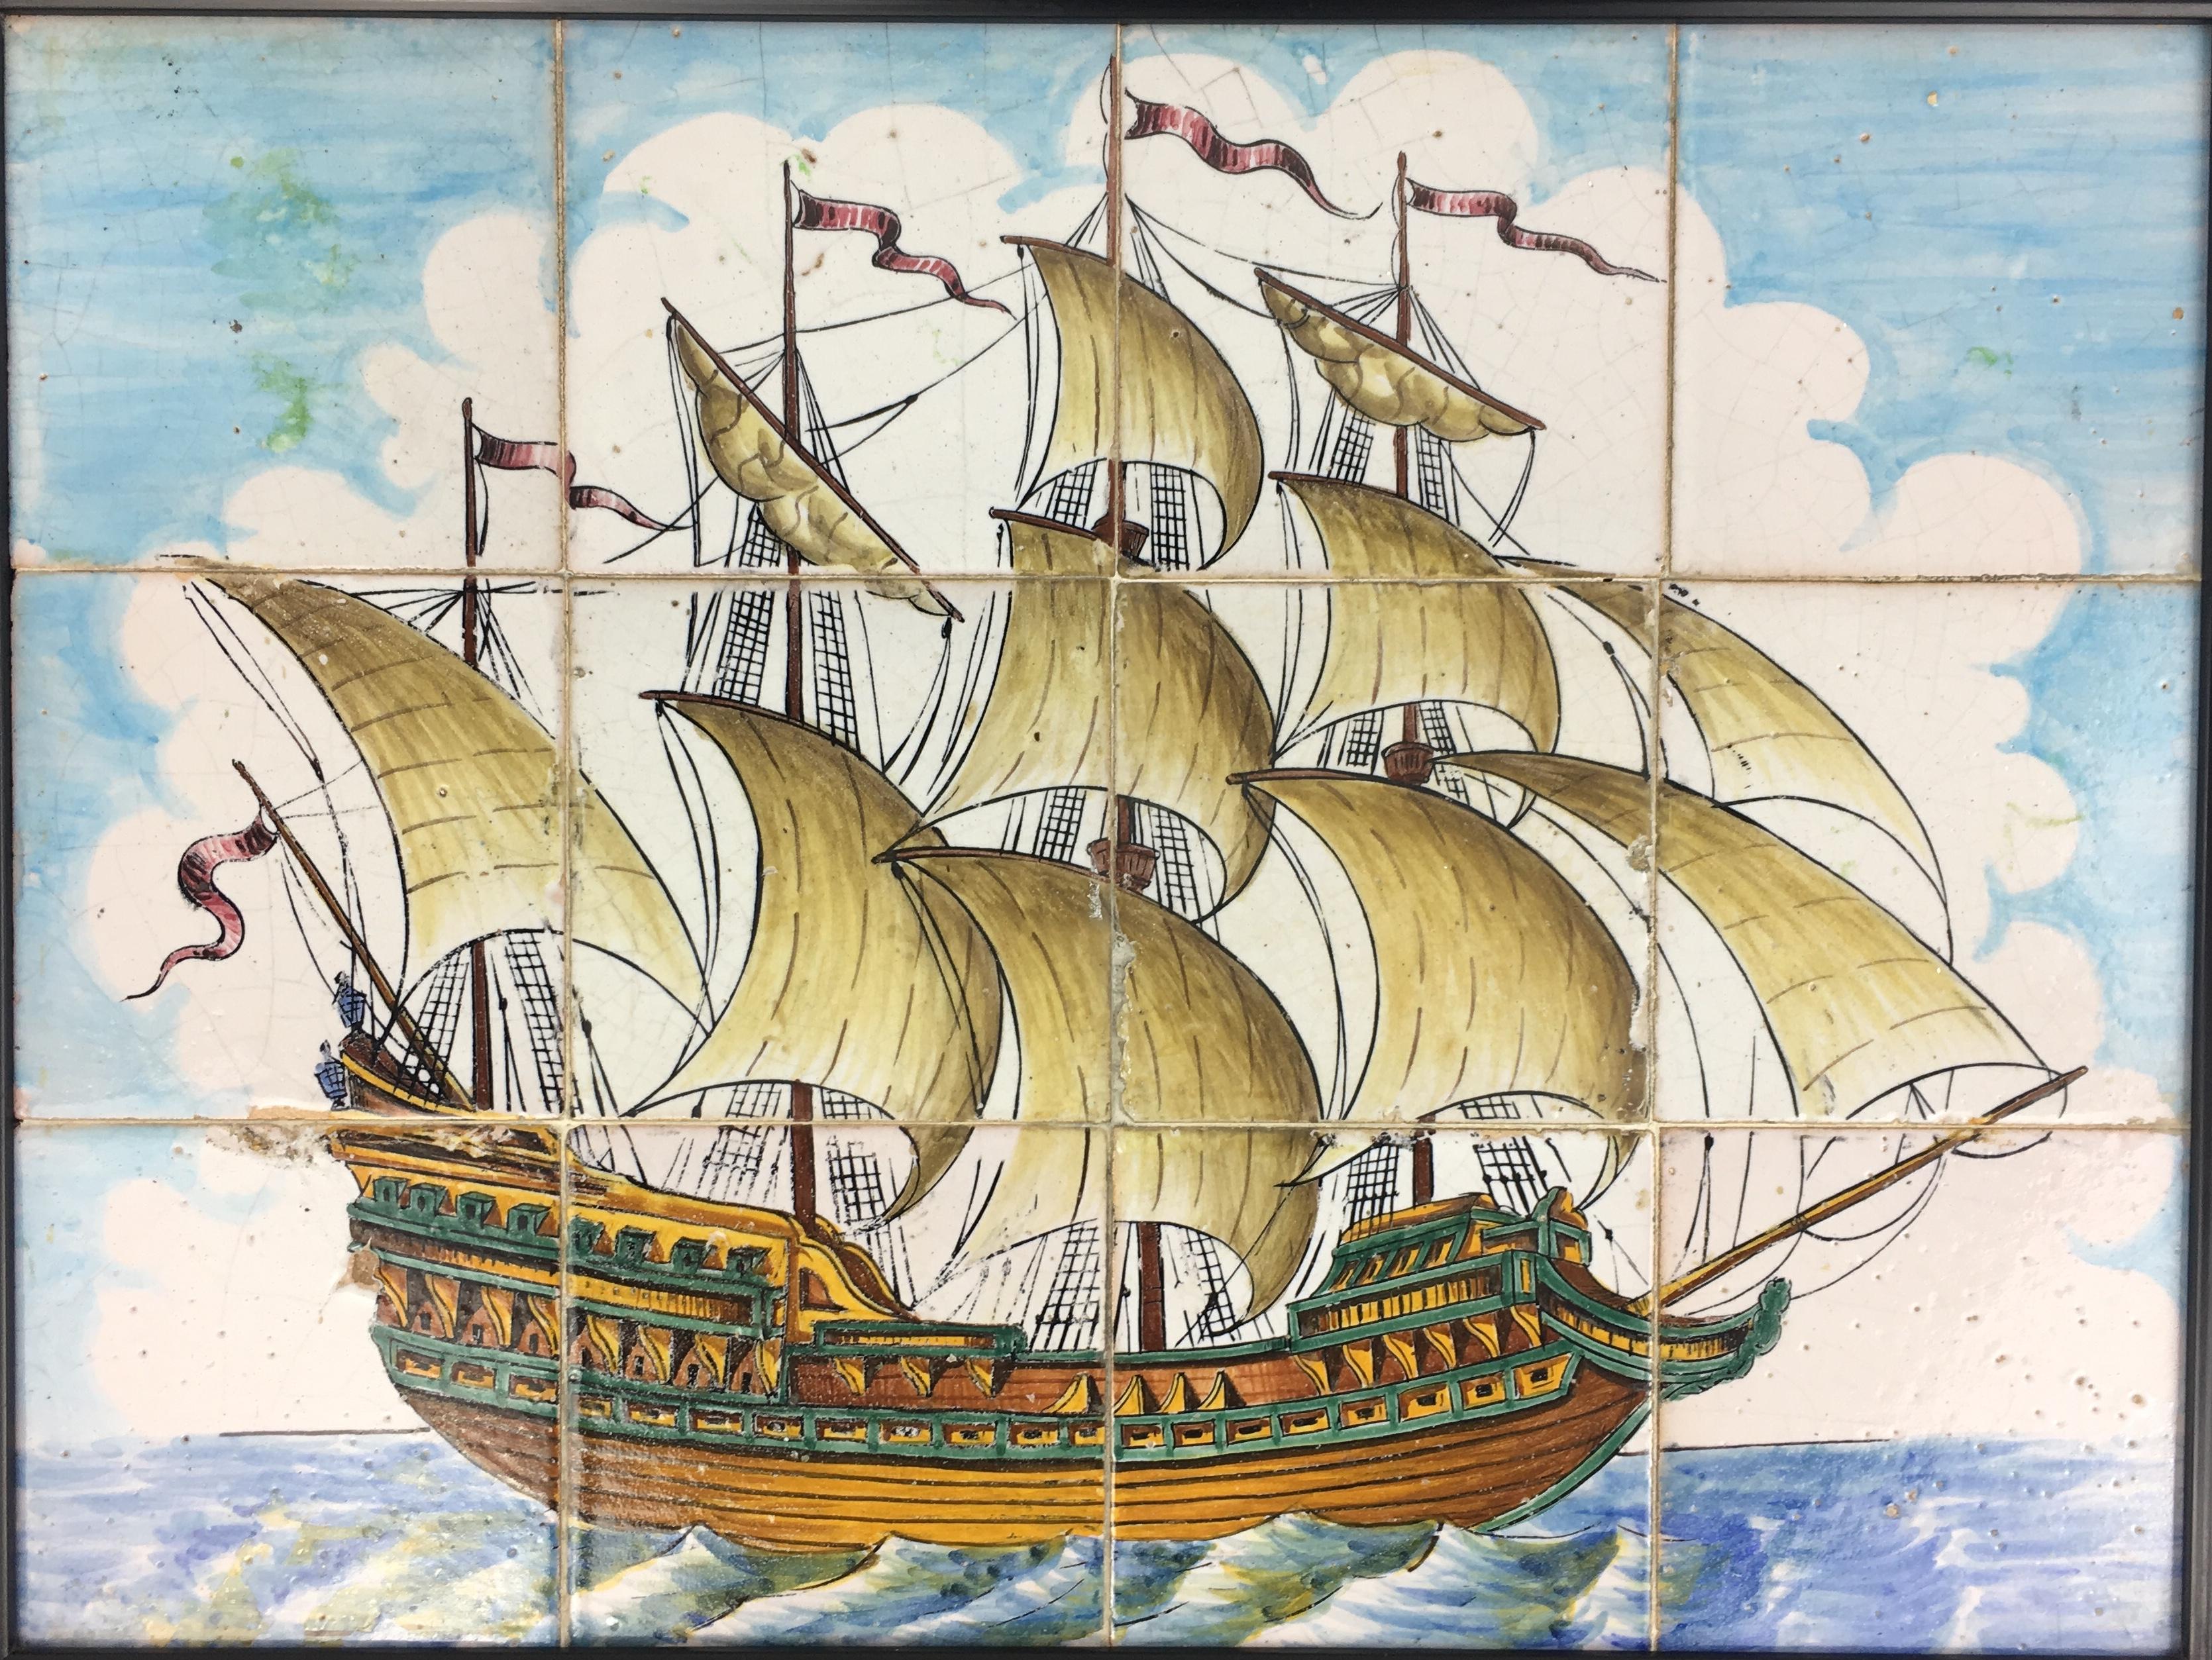 Portugiesische Azulejos-Wandfliesen aus dem 18. Jahrhundert, dekorativer Wandbehang, der ein Segelboot auf dem Meer darstellt, in verschiedenen Blau- und Beigetönen und anderen akzentuierenden Farben. Atemberaubende Details in den auffälligen Farben